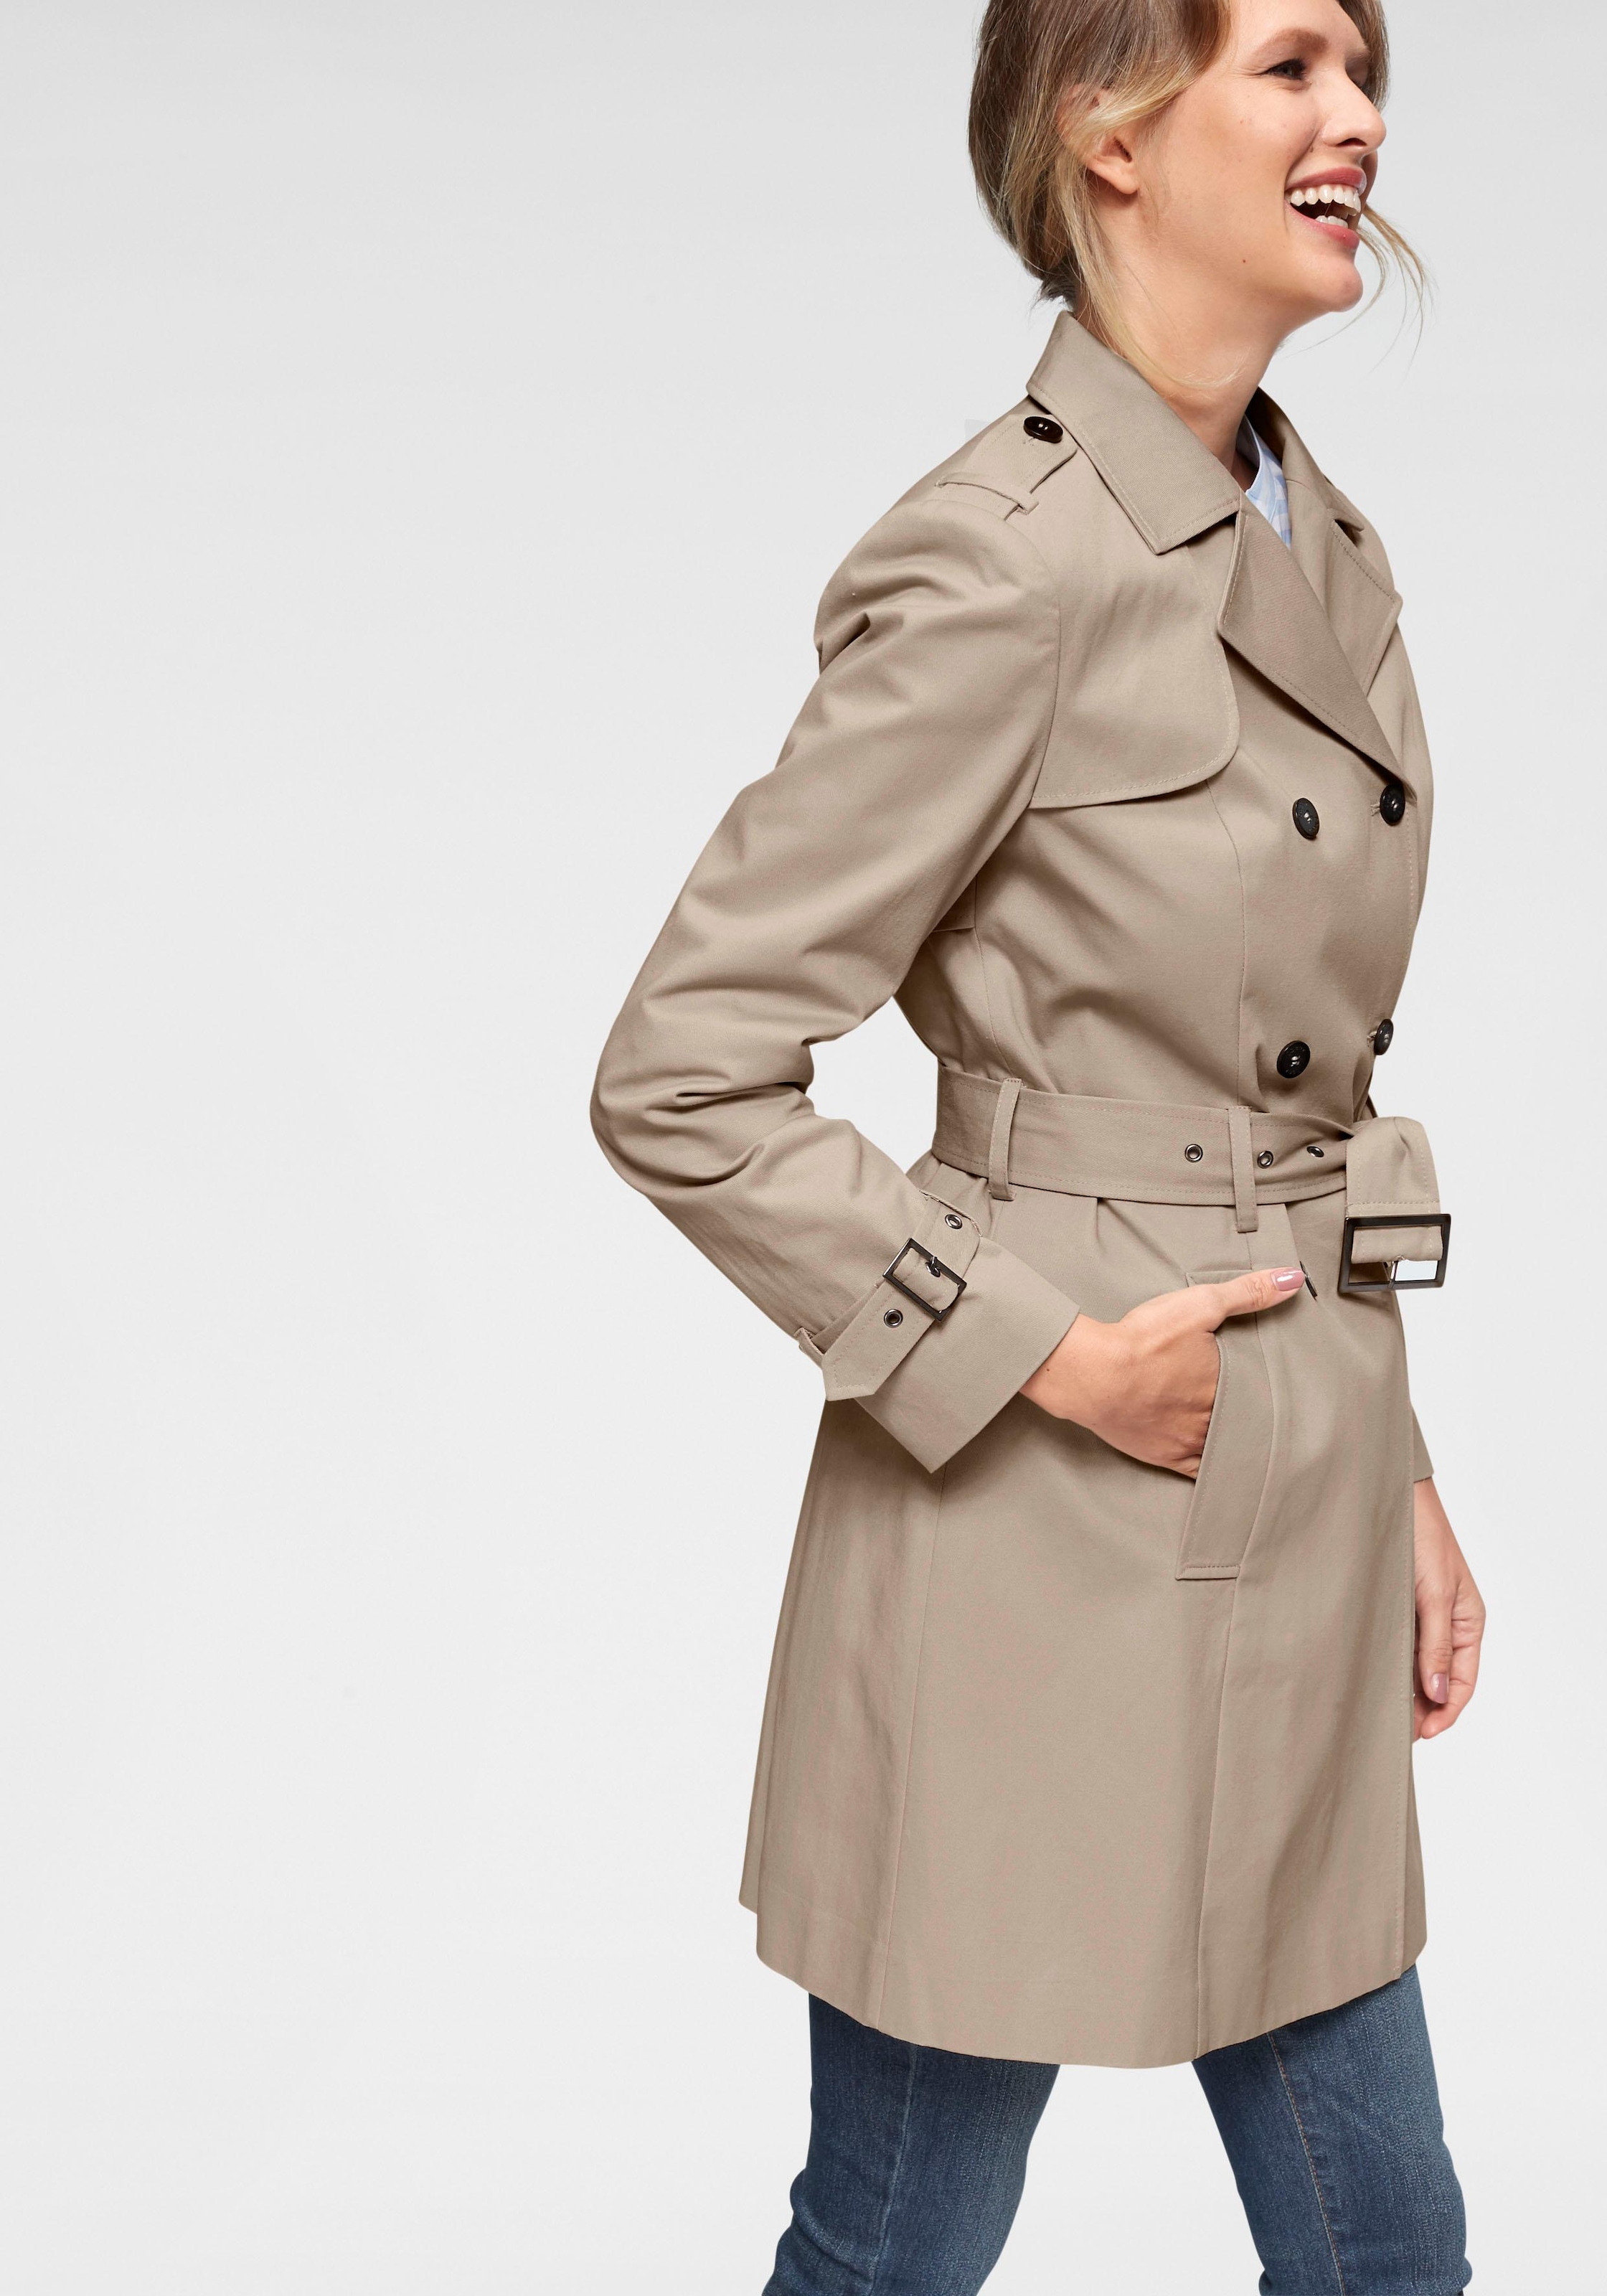 Mantel für Damen Quelle online bei kaufen Stilvolle | Damenmäntel